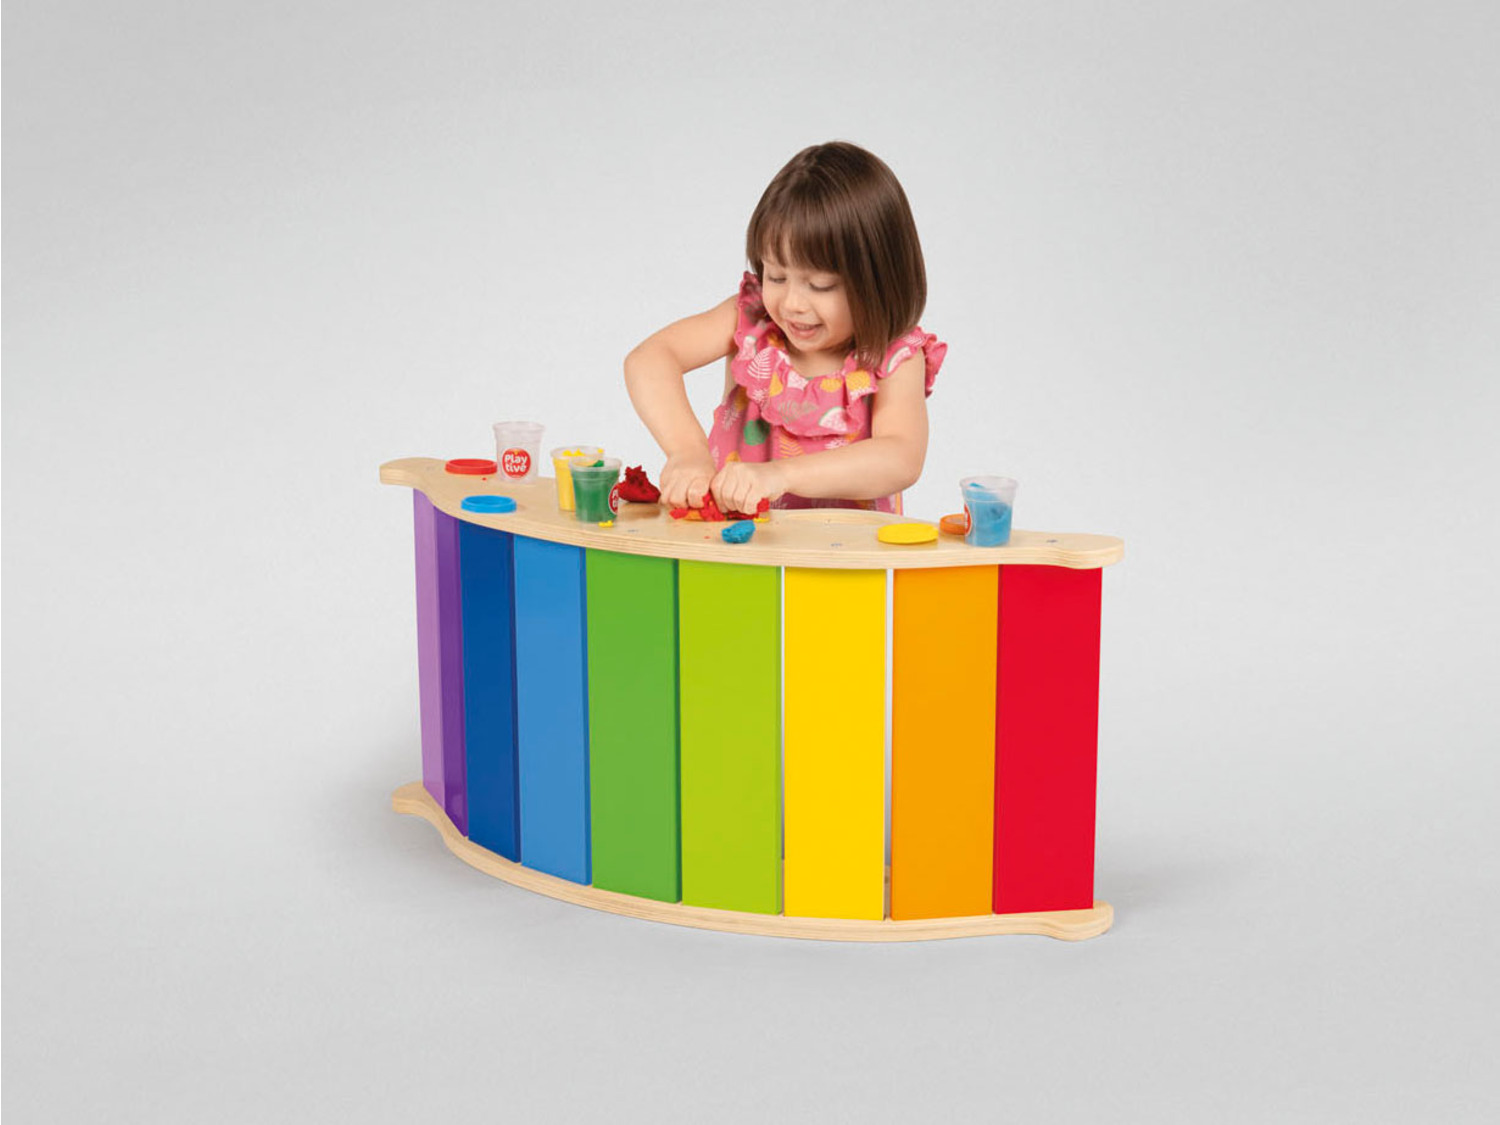 Playtive Holz LIDL | Balancewippe, Regenbogenfarben in